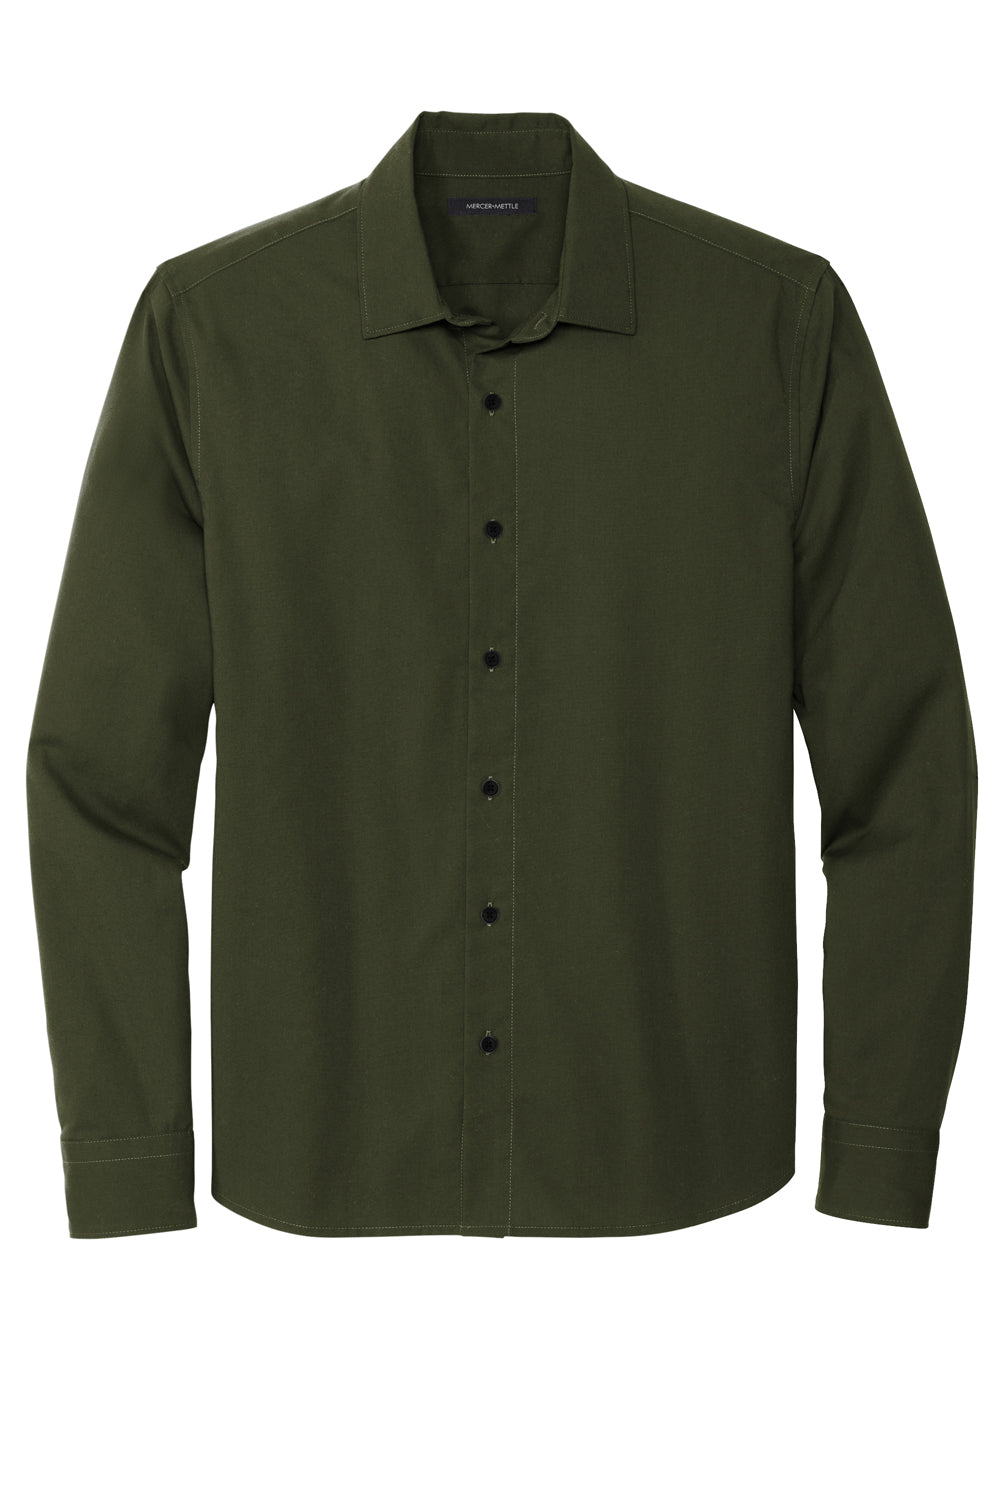 Mercer+Mettle MM2000 Stretch Woven Long Sleeve Button Down Shirt Townsend Green Flat Front